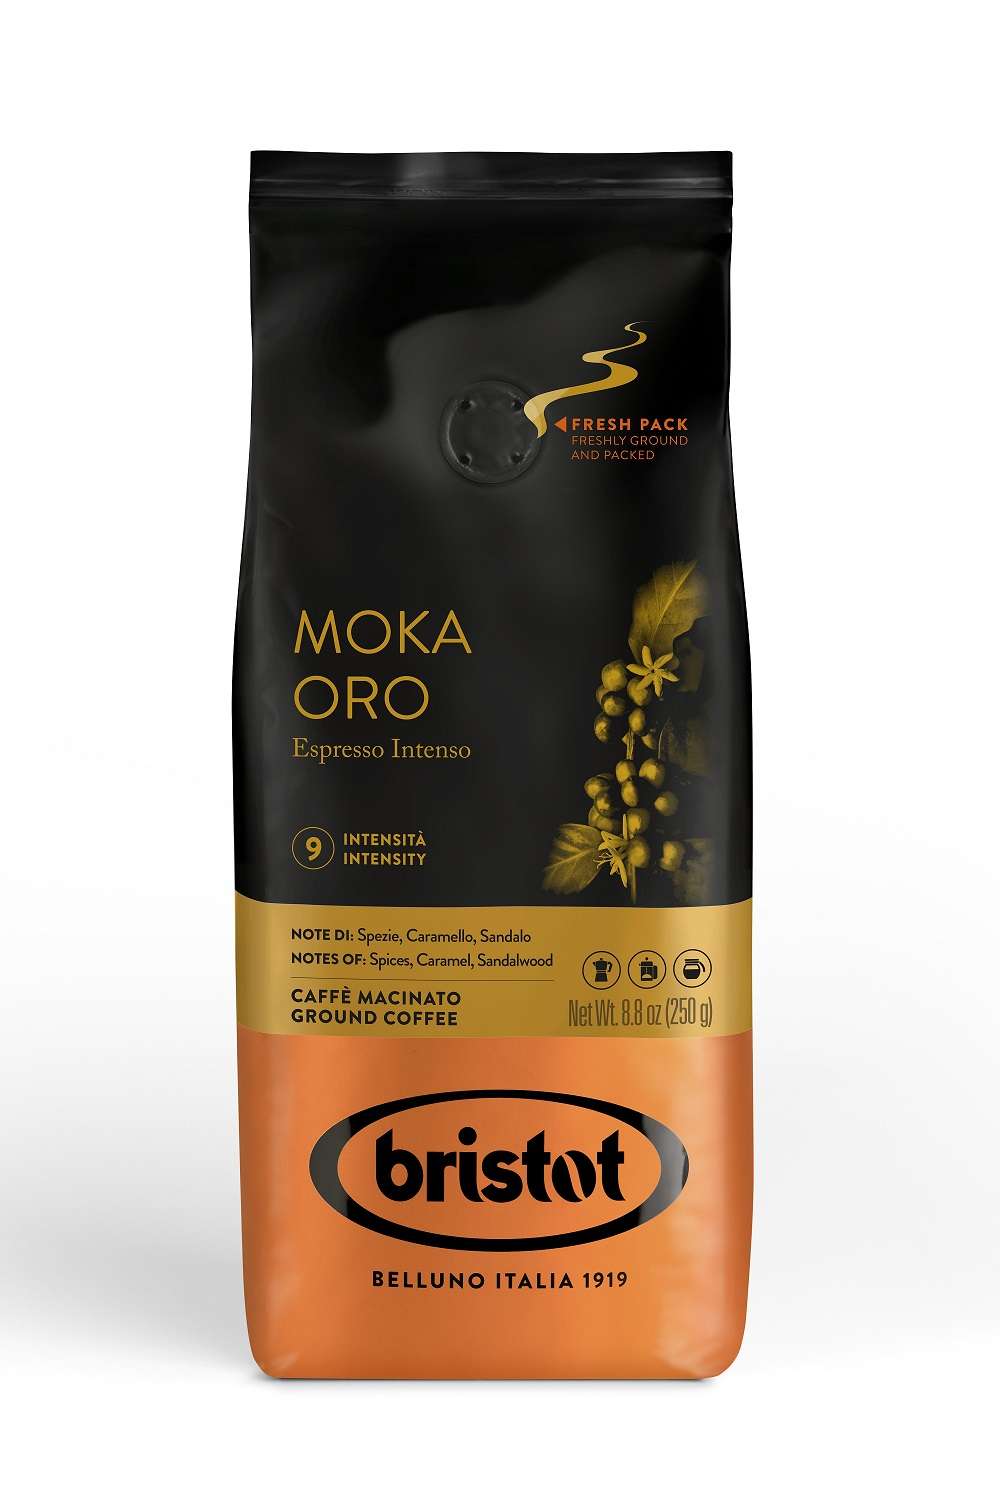 Bristot Moka Oro 250g Kaffee gemahlen